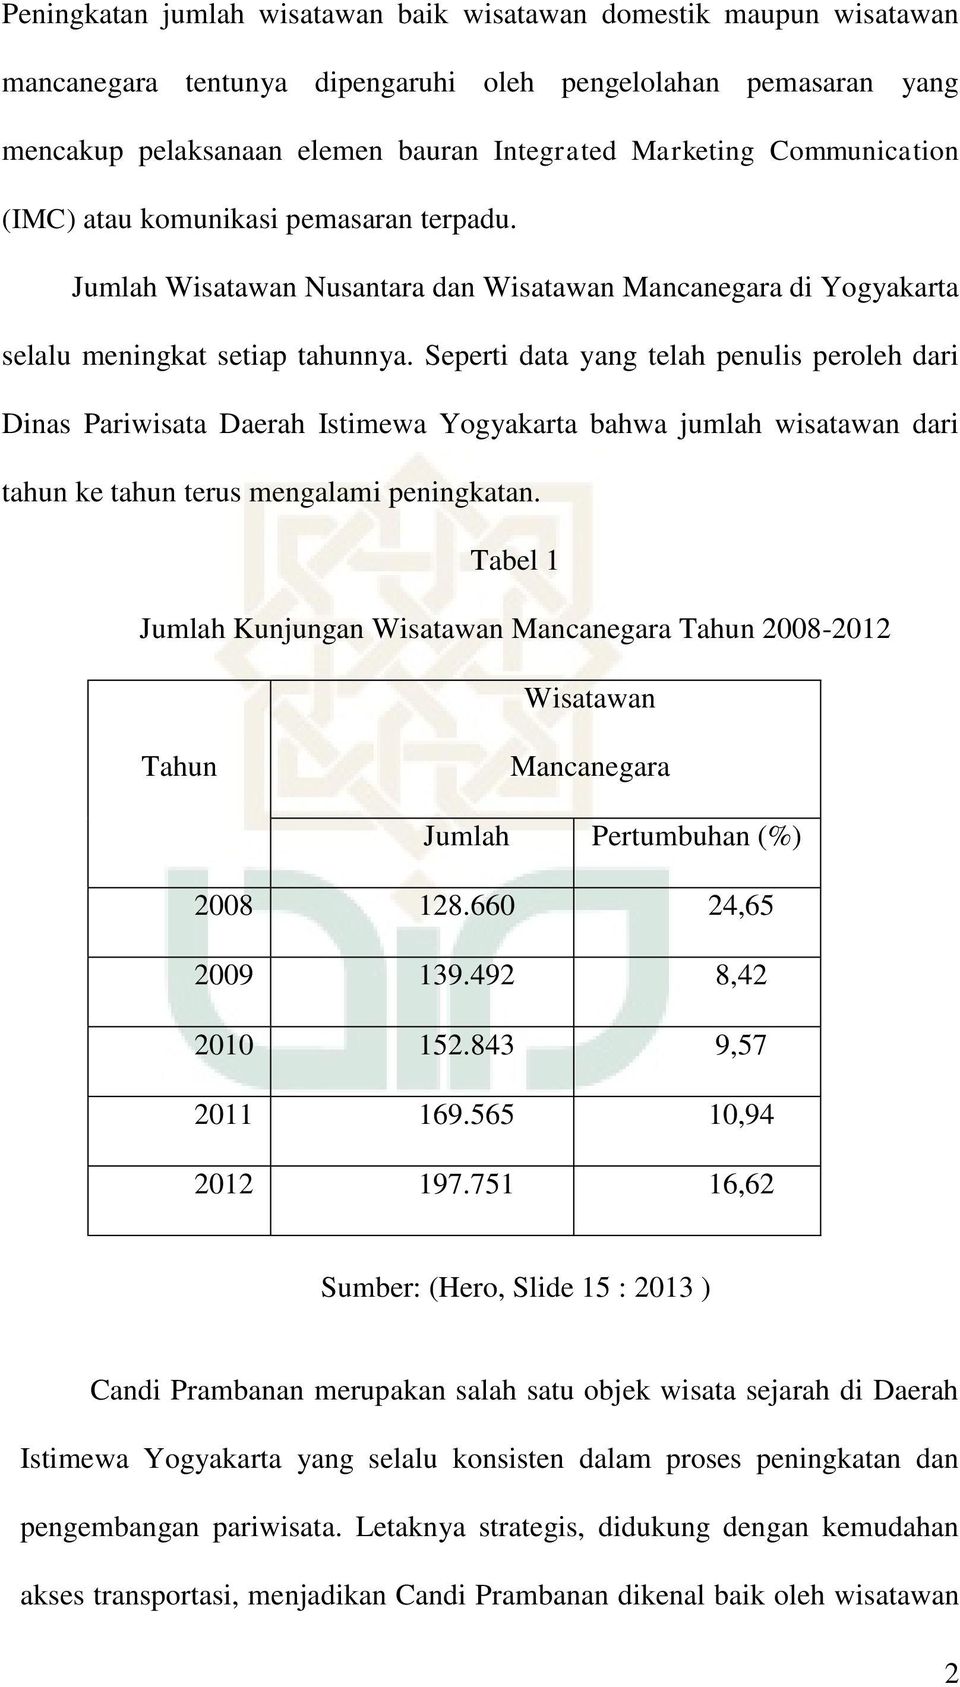 Seperti data yang telah penulis peroleh dari Dinas Pariwisata Daerah Istimewa Yogyakarta bahwa jumlah wisatawan dari tahun ke tahun terus mengalami peningkatan.